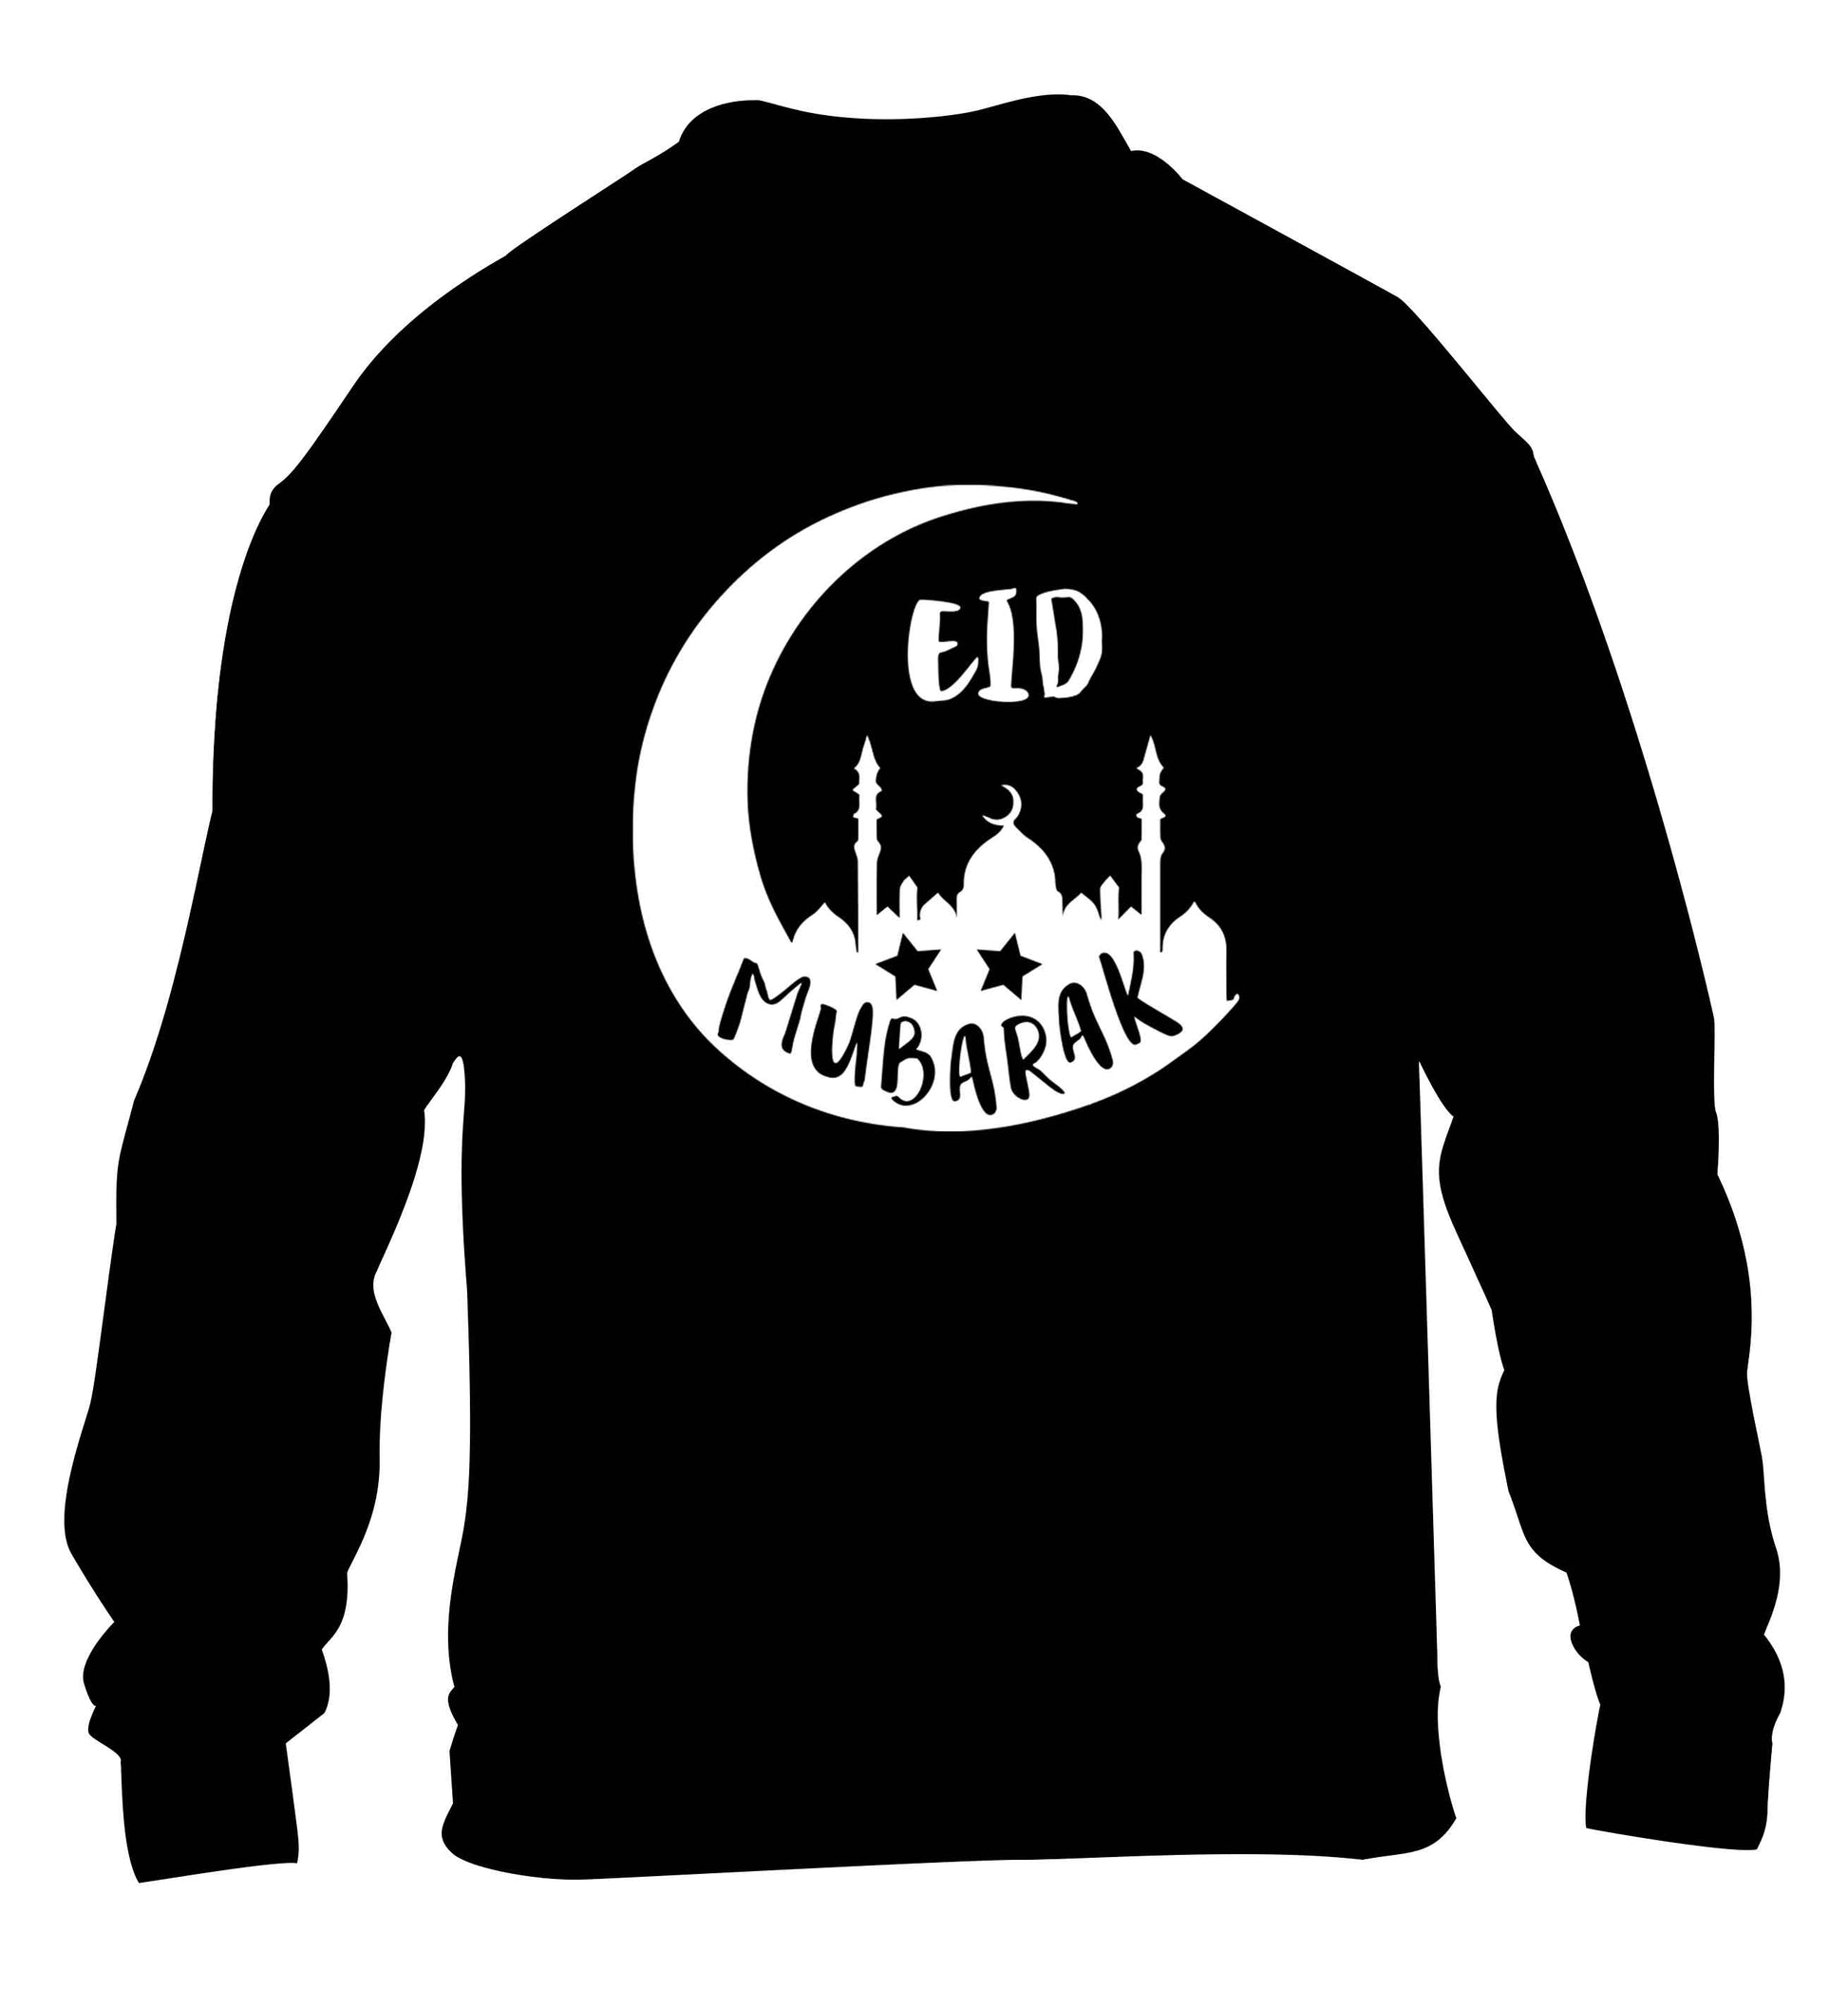 Eid mubarak children's black sweater 12-13 Years